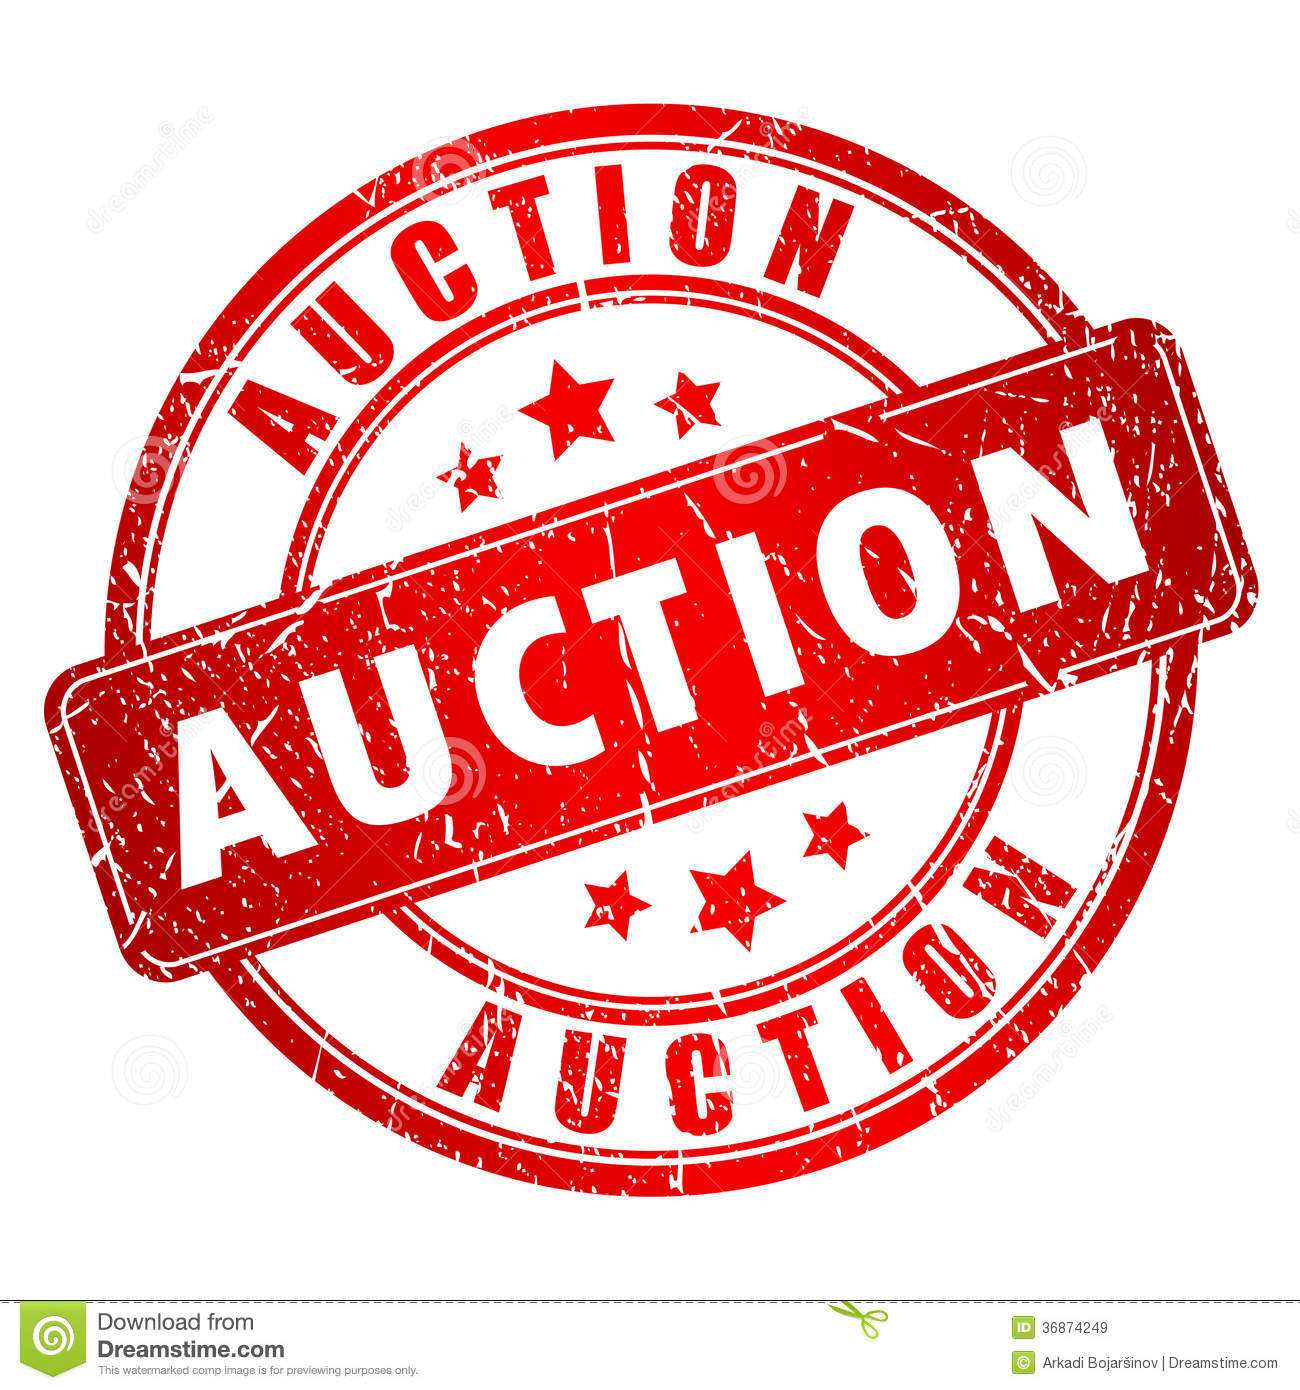 auction clipart live auction